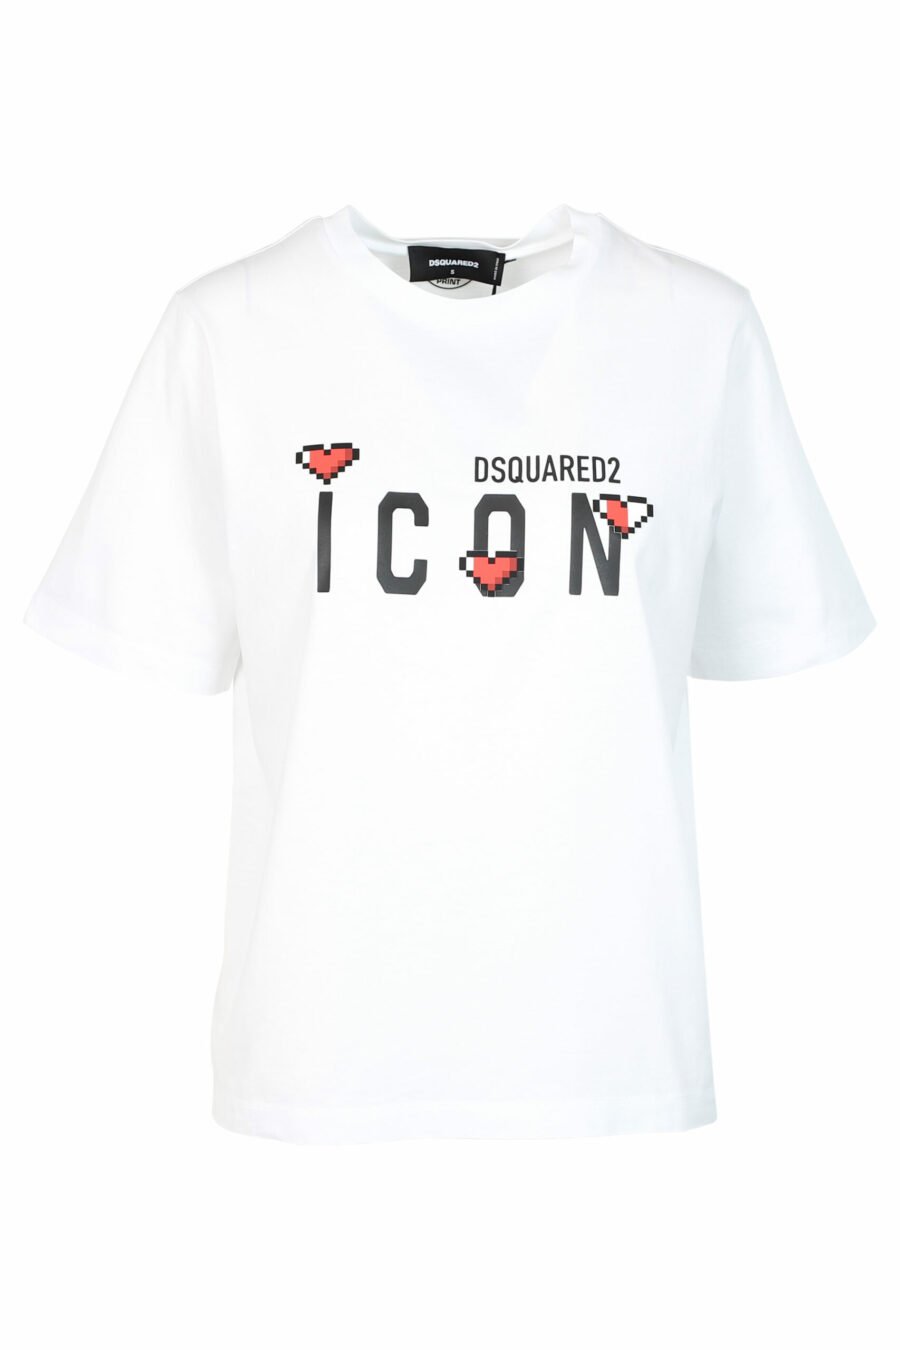 Schwarzes T-Shirt mit "icon game"-Logo - 8052134989265 skaliert